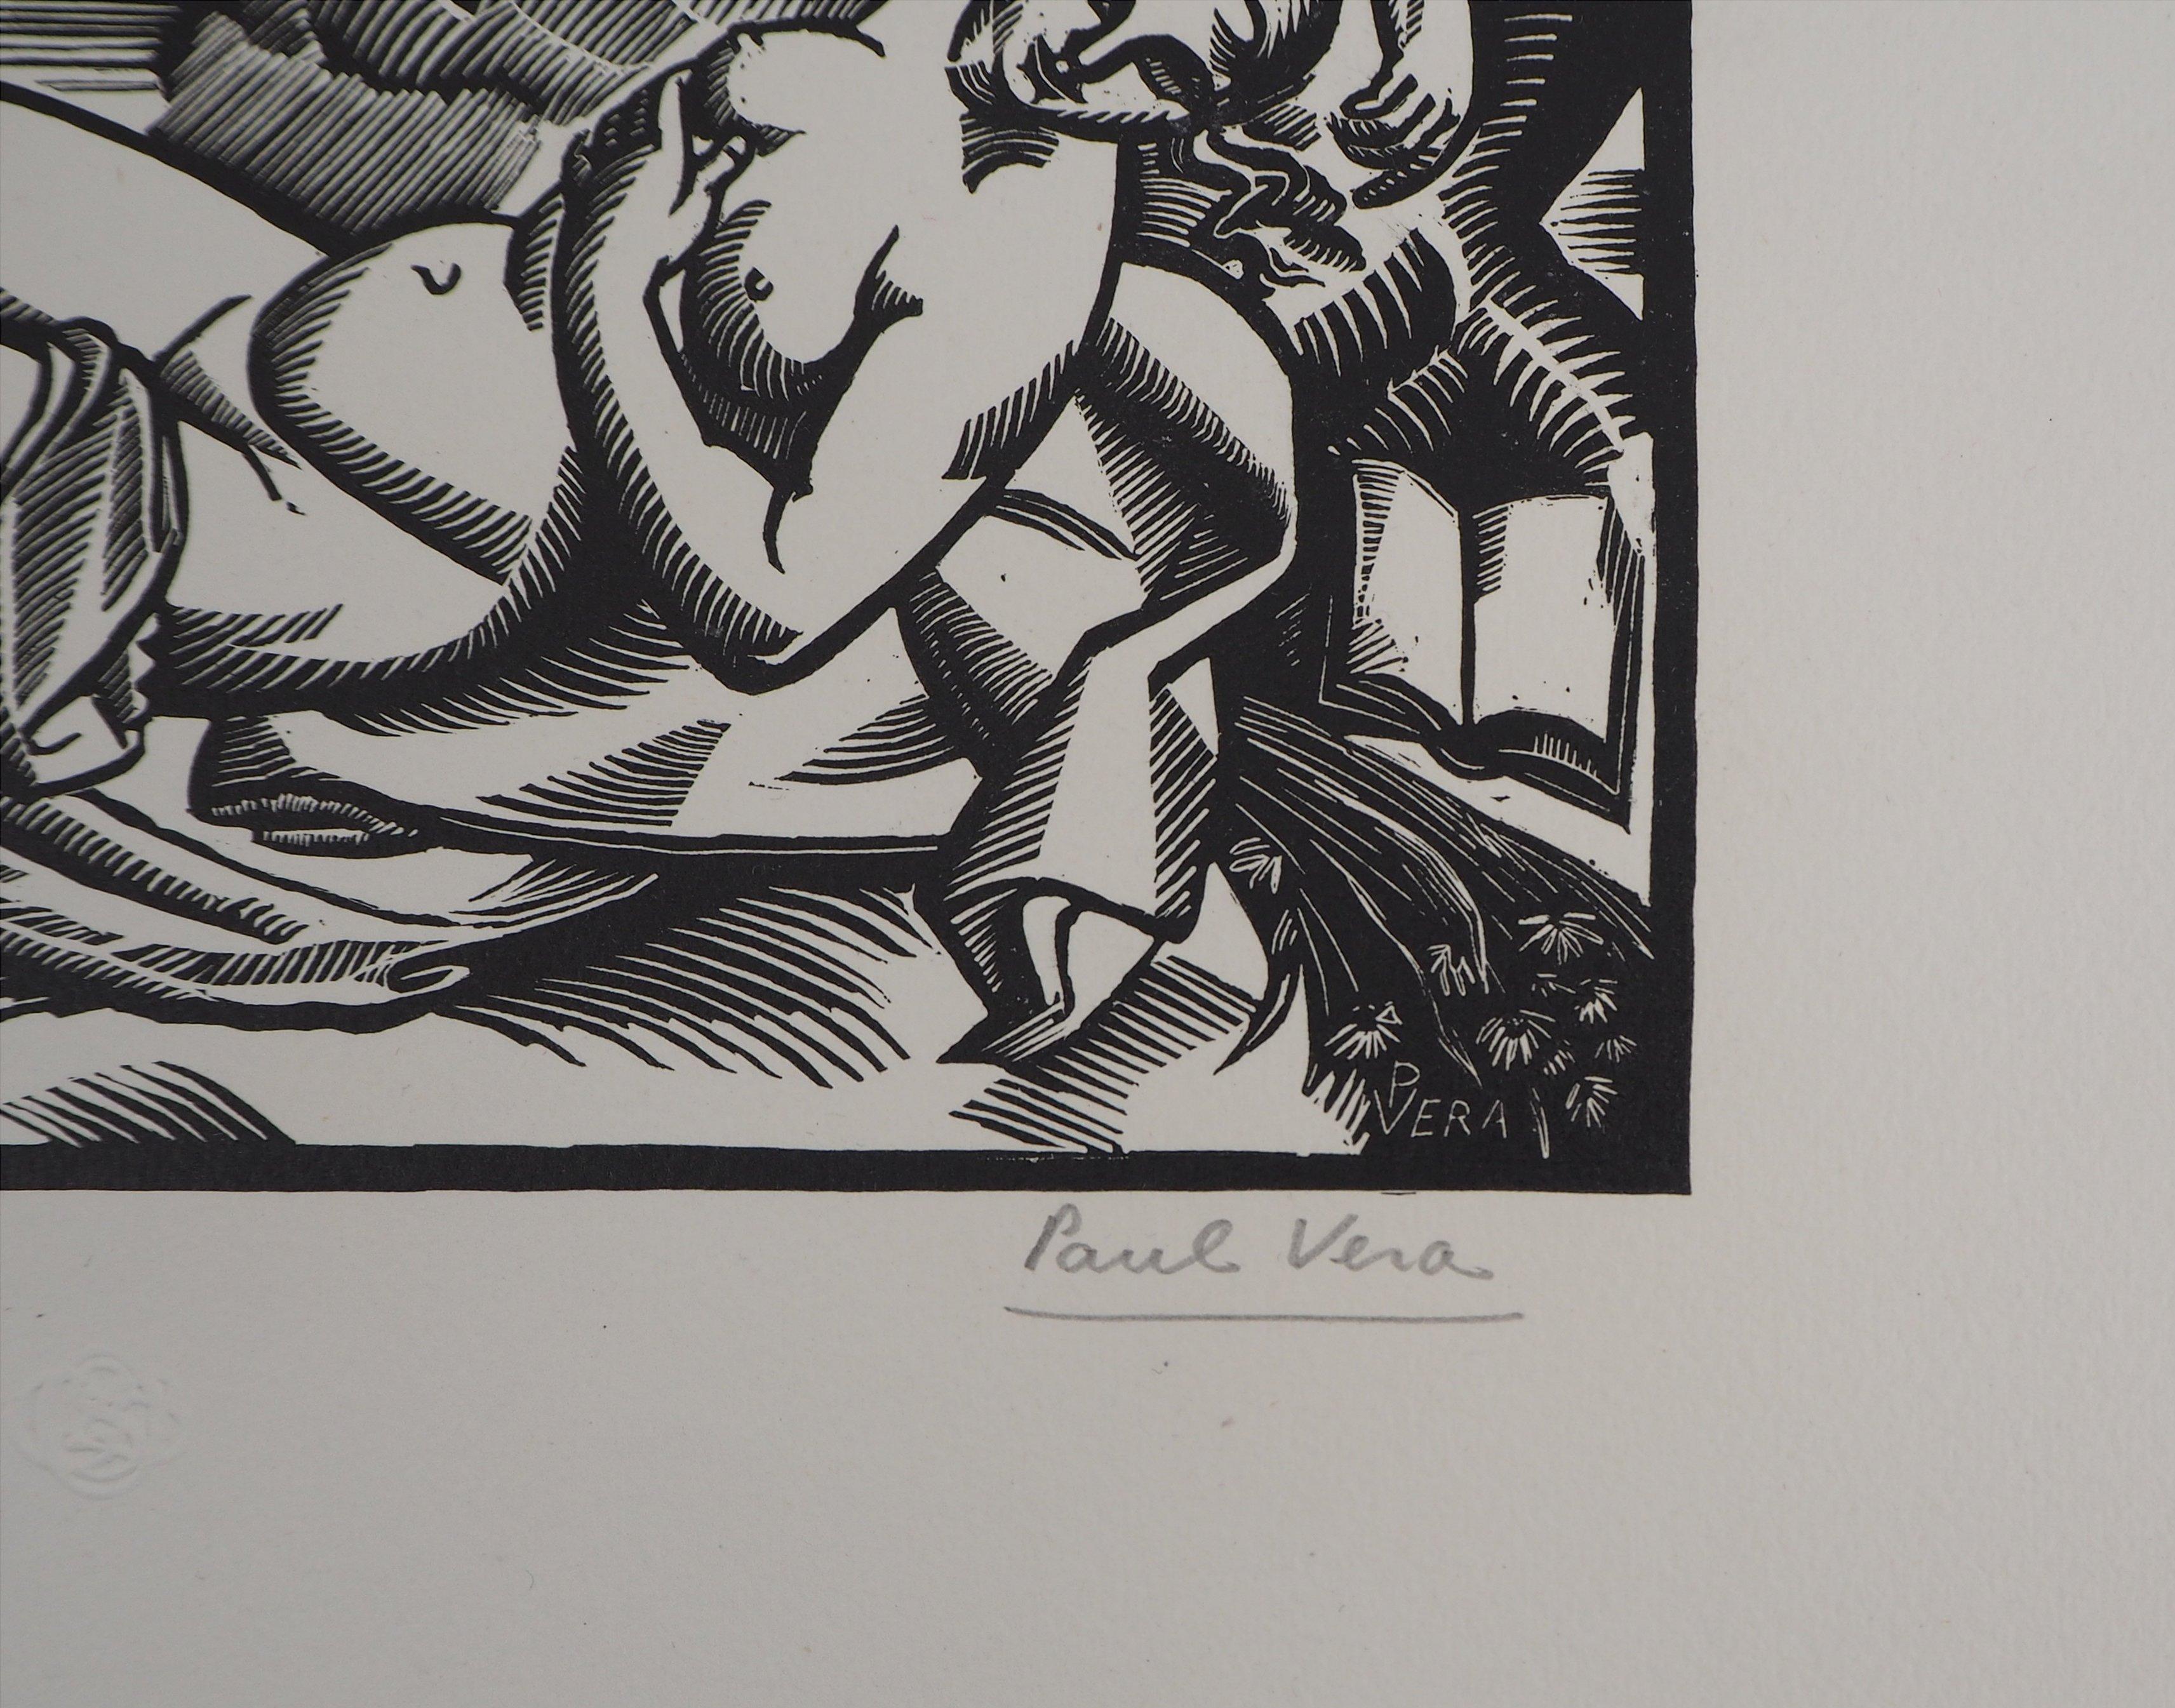 Paul Vera
Sommer, 1924

Original Holzschnitt
Handsigniert mit Bleistift
Nummeriert /160
Auf Vellum 25 x 33 cm (ca. 9,8 x 12,9 in)

Herausgegeben für den 'Imagier de la Gravure sur Bois' (5. Jahr) und trägt den Blindstempel des Herausgebers (Lugt